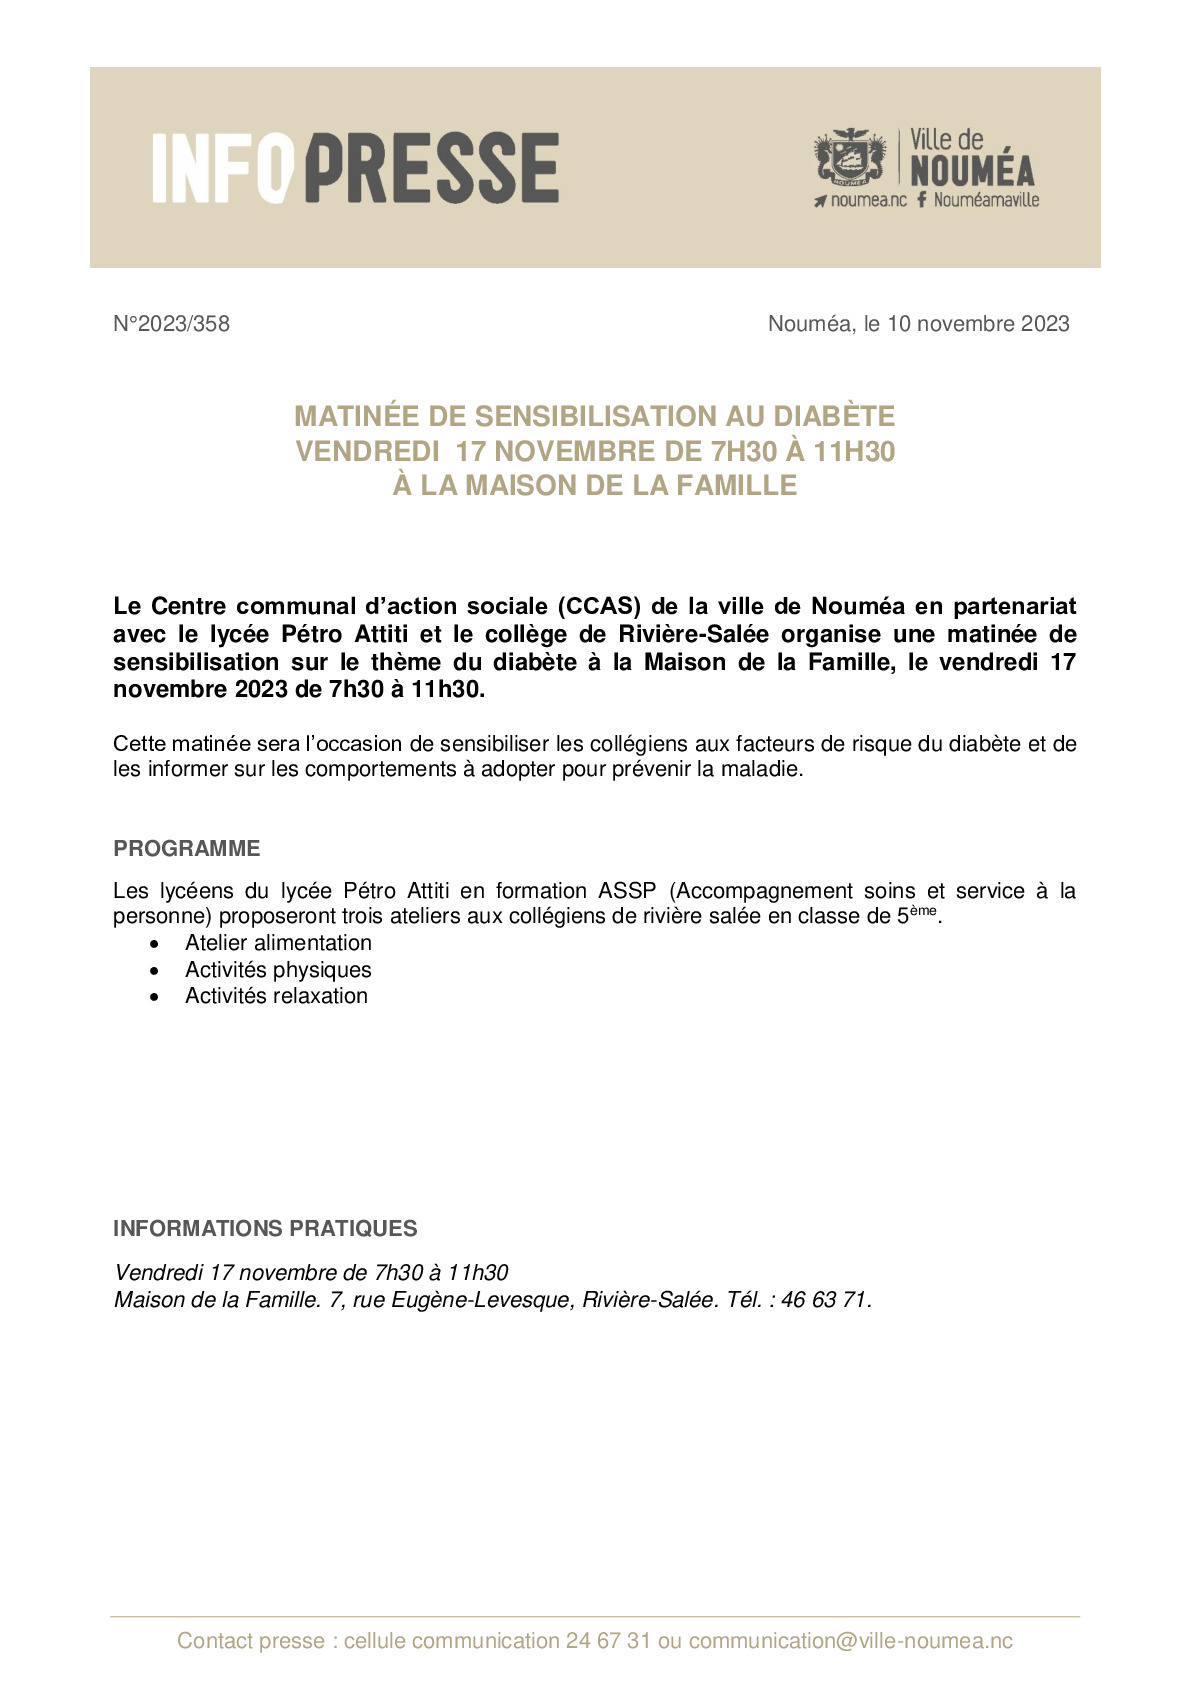 IP 358 Sensibilisation diabète Maison de la Famille 1711.pdf